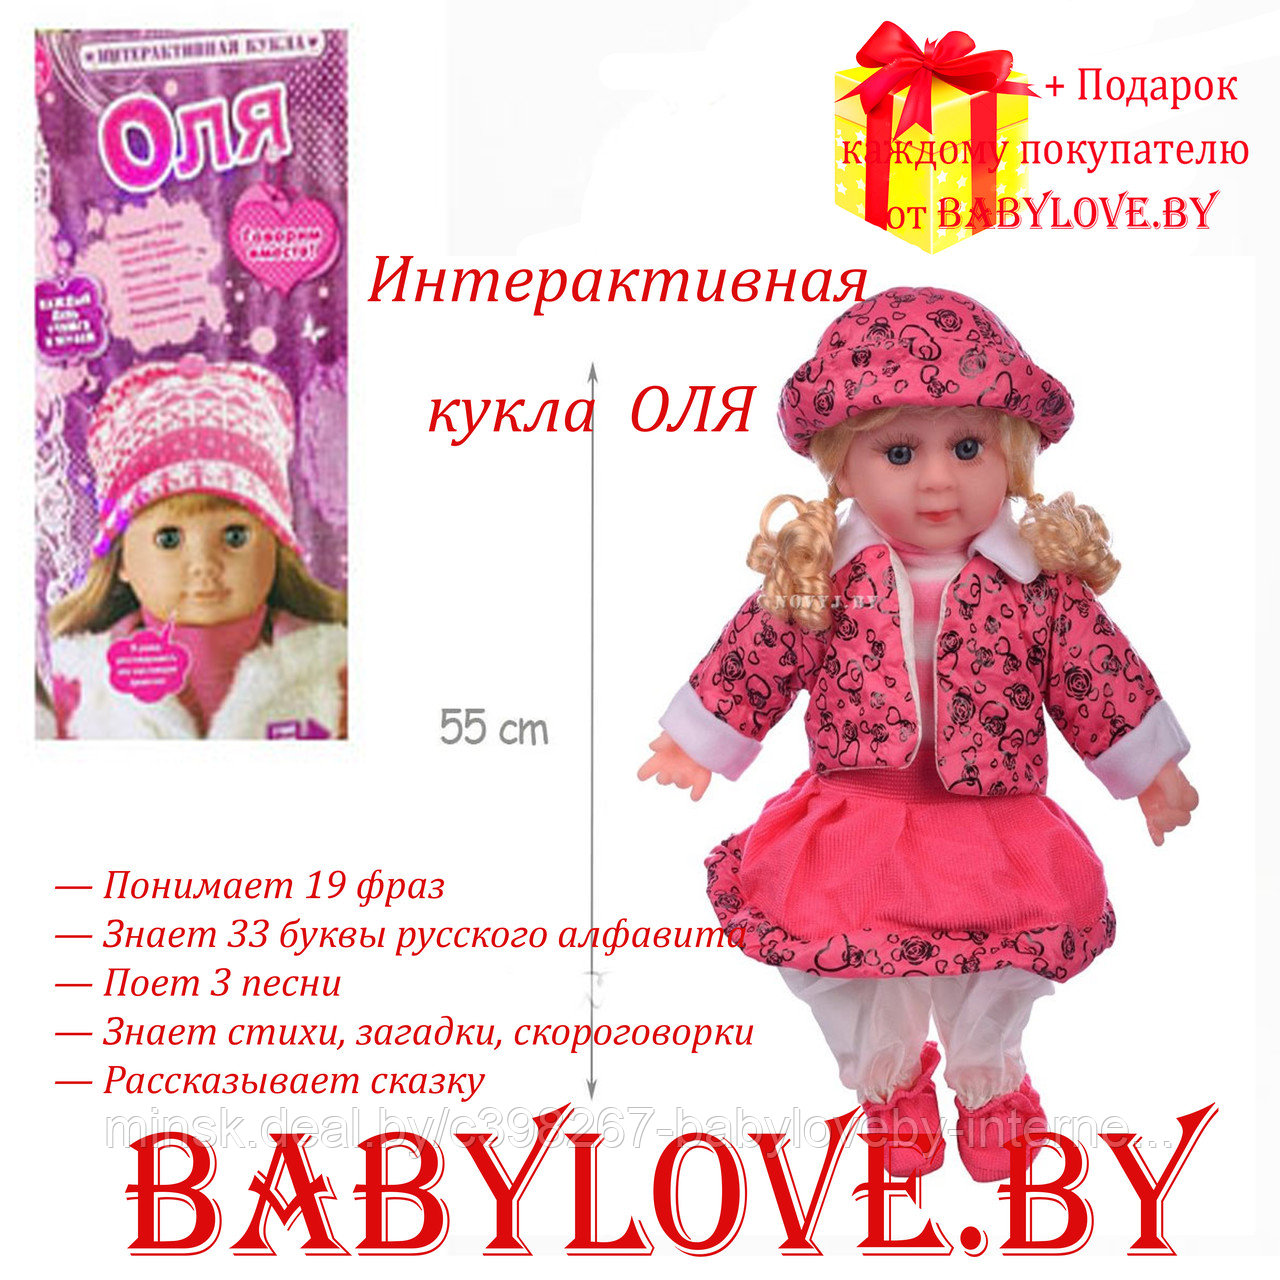 Интерактивная кукла Оля Ласкина Joy Toy 9333 озвученная, с дополнительными функциями